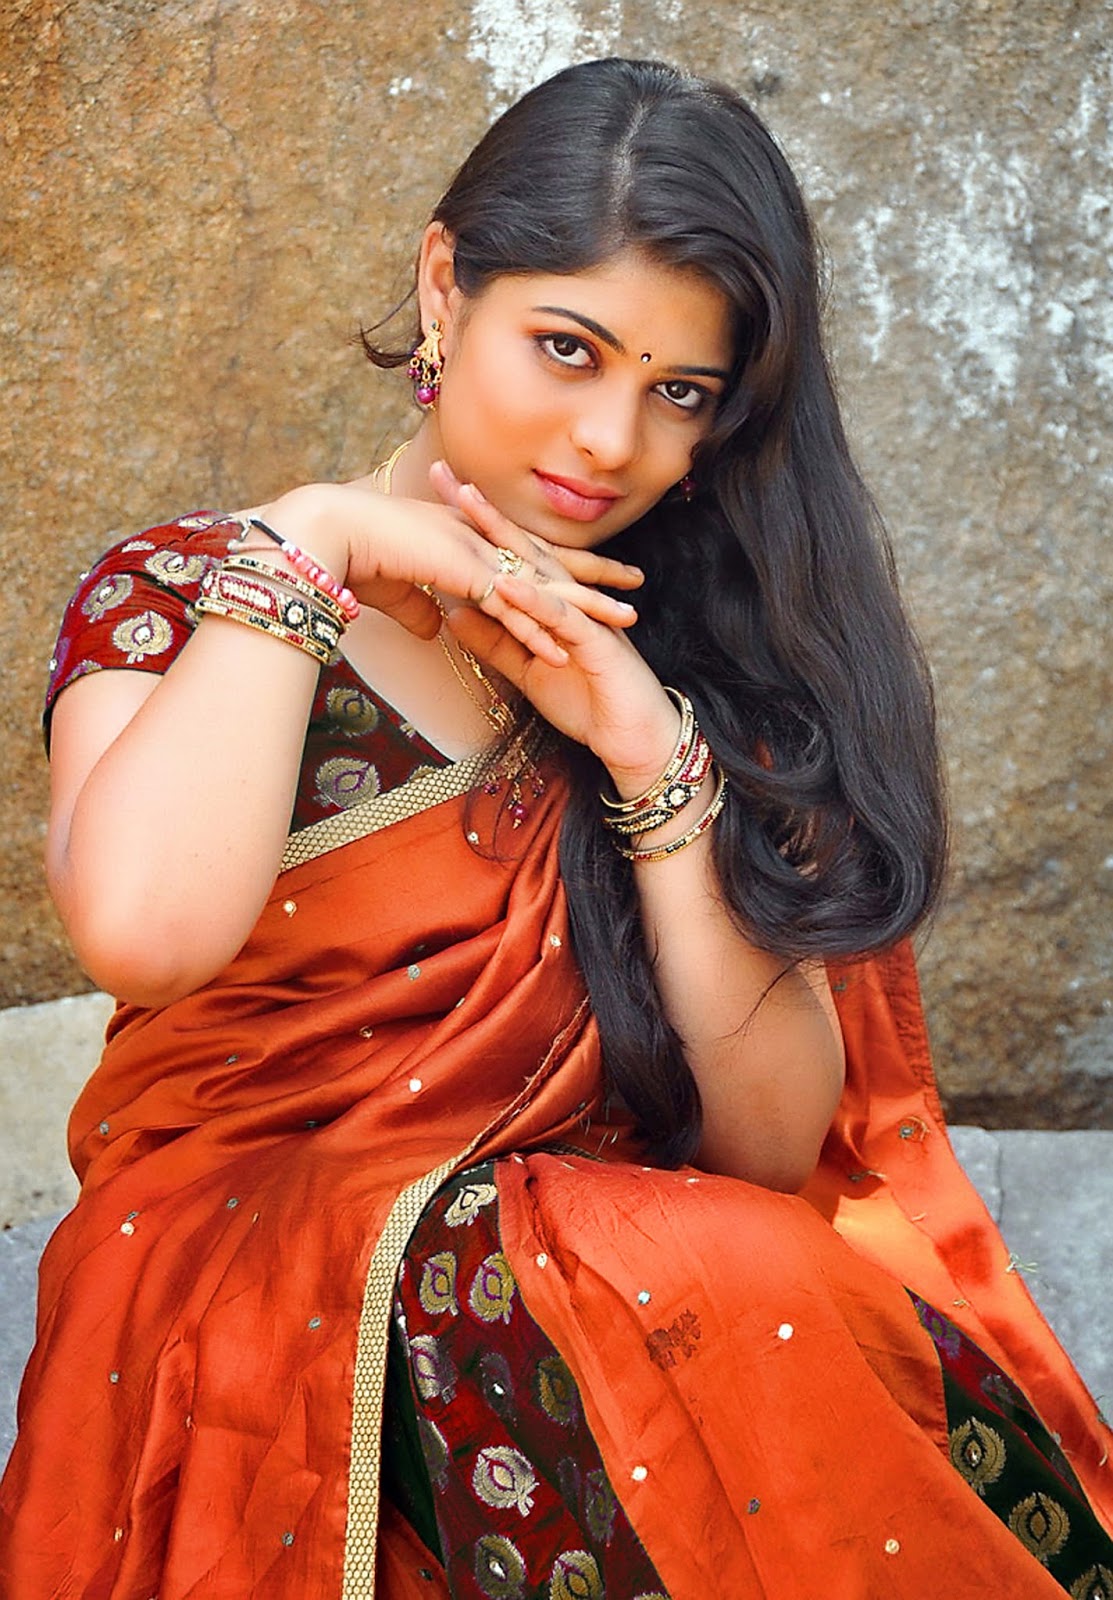 Latest High Definition Wallpaper Of Telugu Actress Anusha In Saree Indian Actress Photo Hd